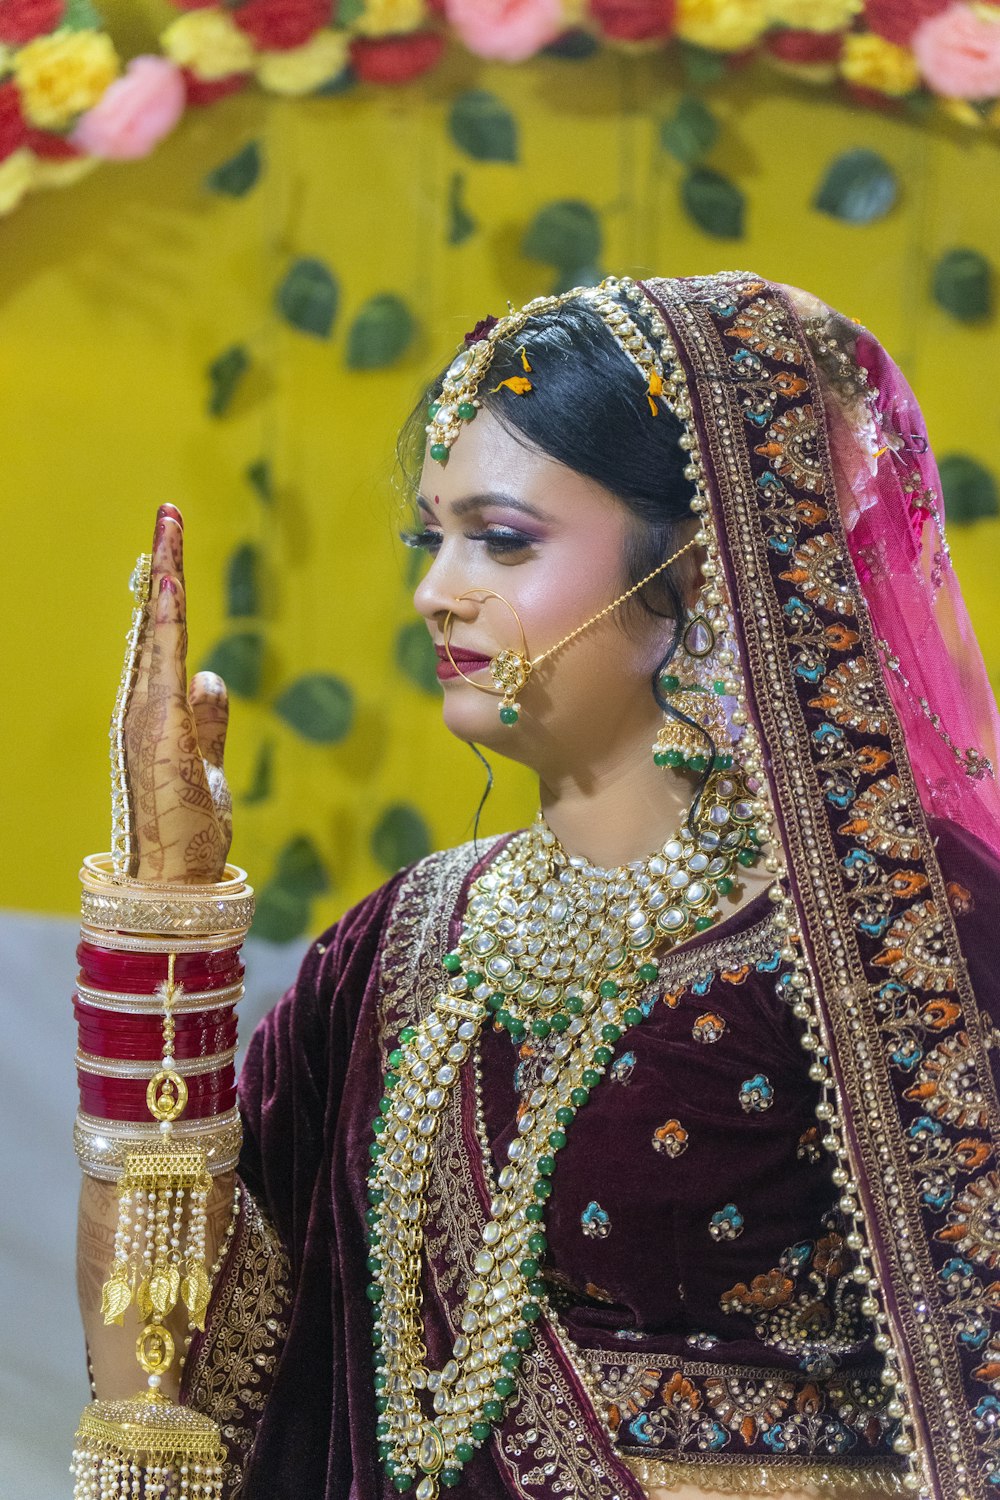 인도 전통 의상을 입은 여성이 작은 물건을 들고 있다